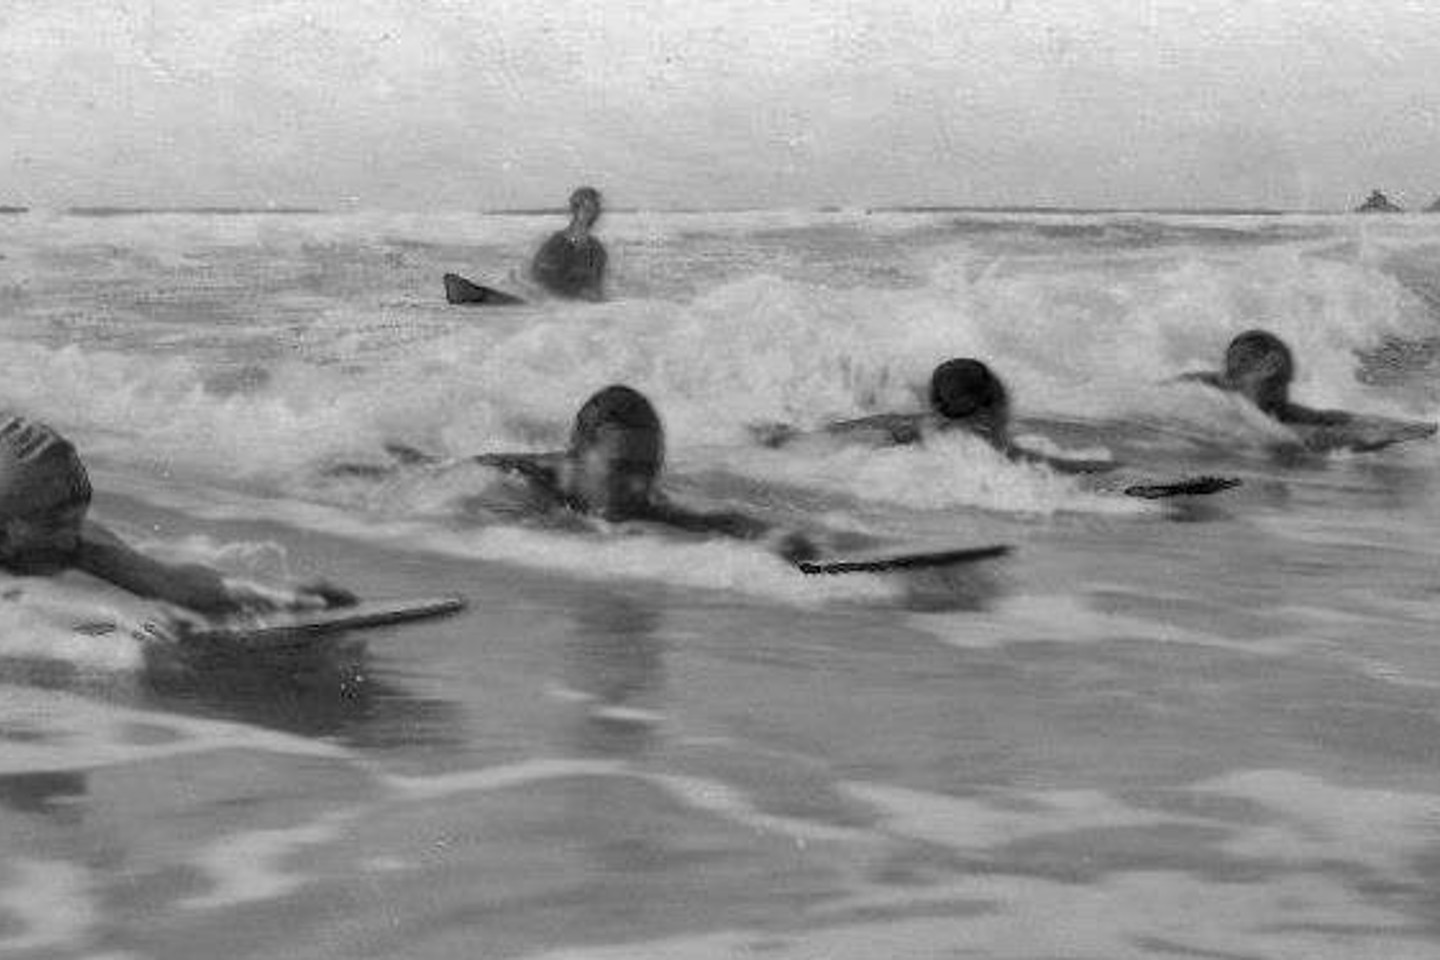 Children surfing